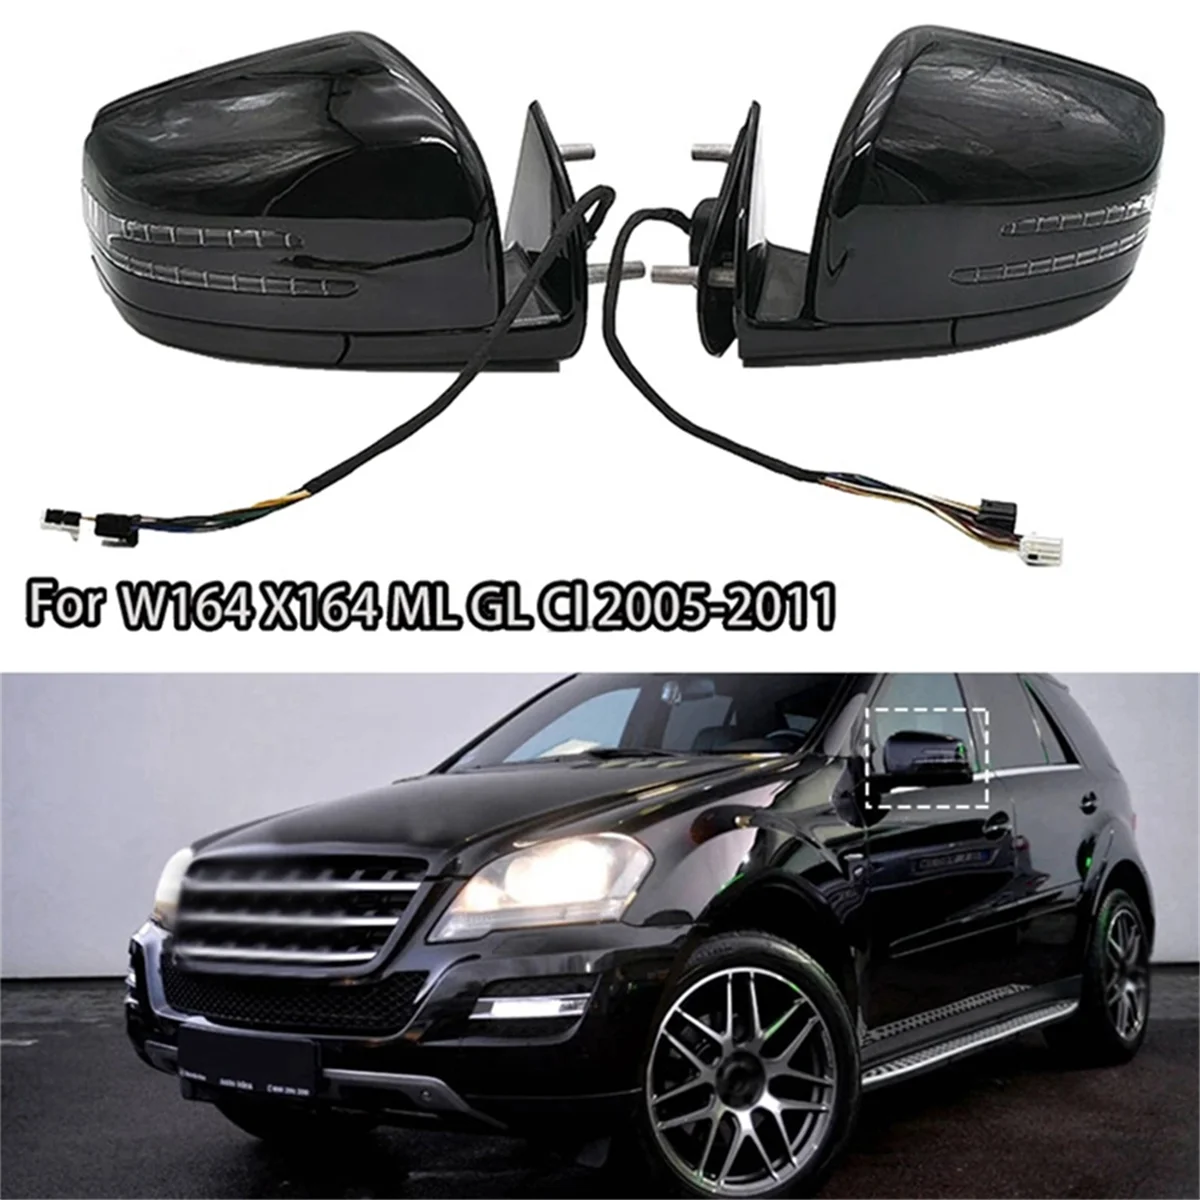 Araba Güç Dikiz Aynası Mercedes Benz ML GL Sınıfı W164 X164 2005-2011 1668100164 1668100264 Katlanır Ayna Assy B